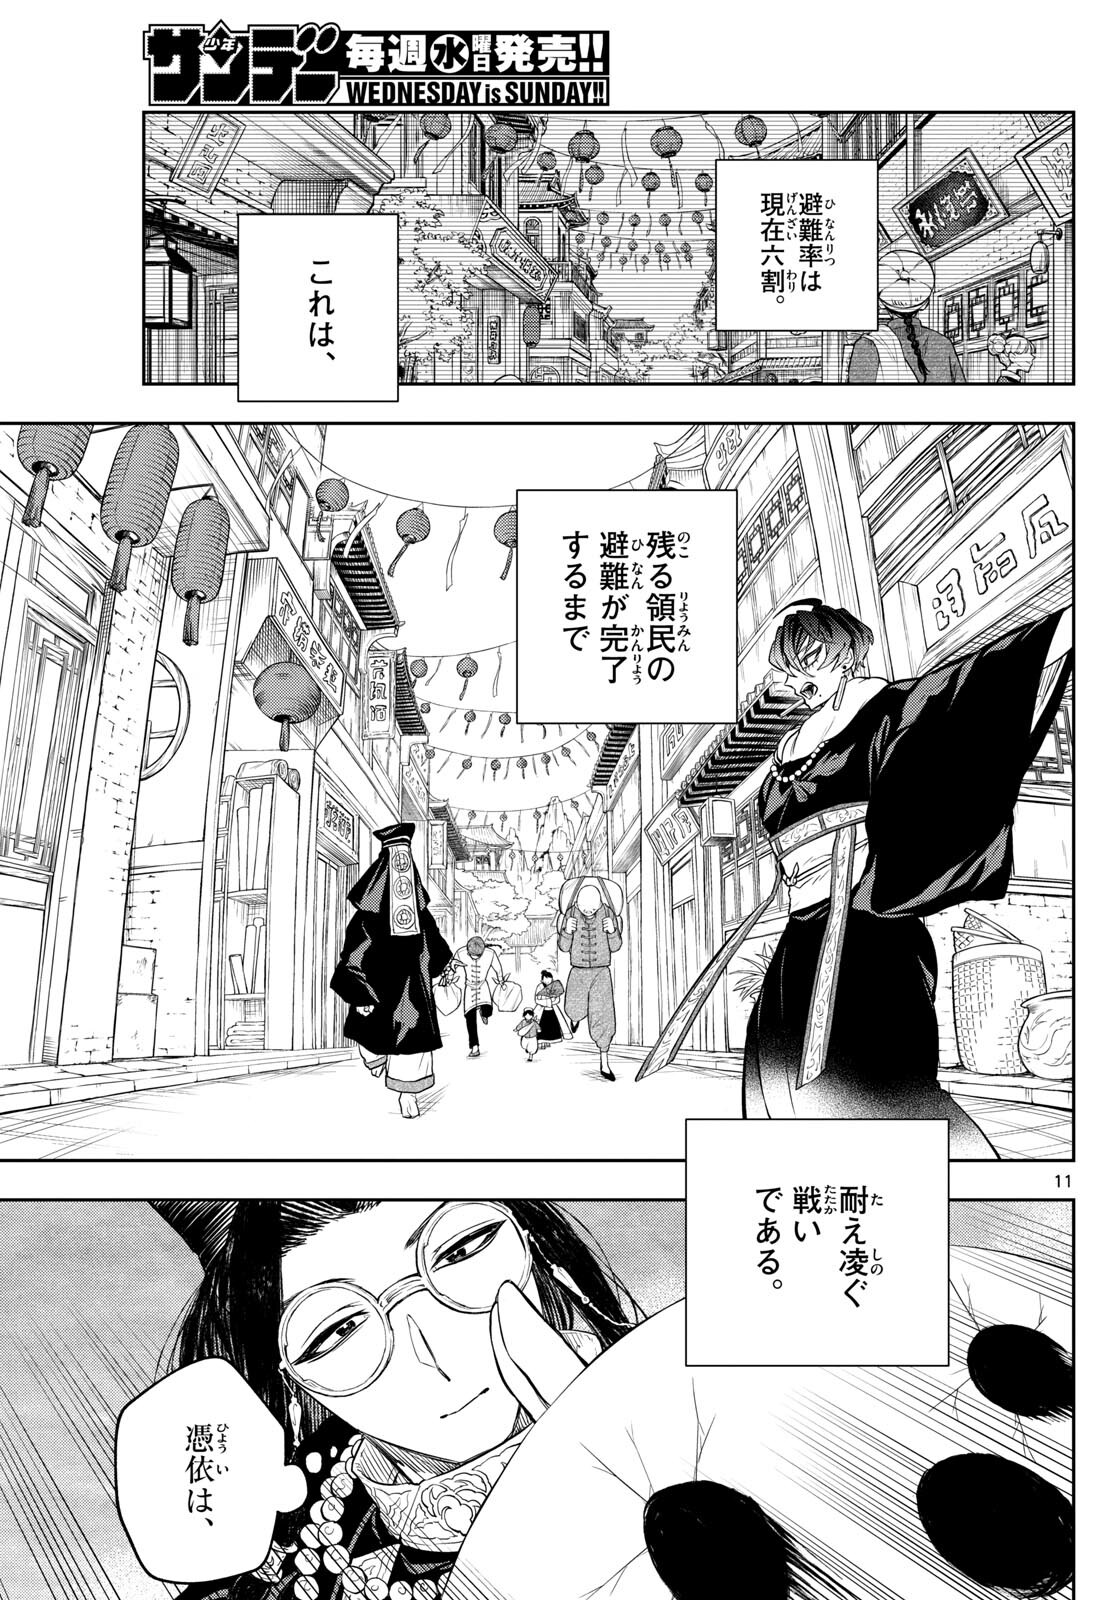 Akatsuki Jihen - Chapter 42 - Page 11